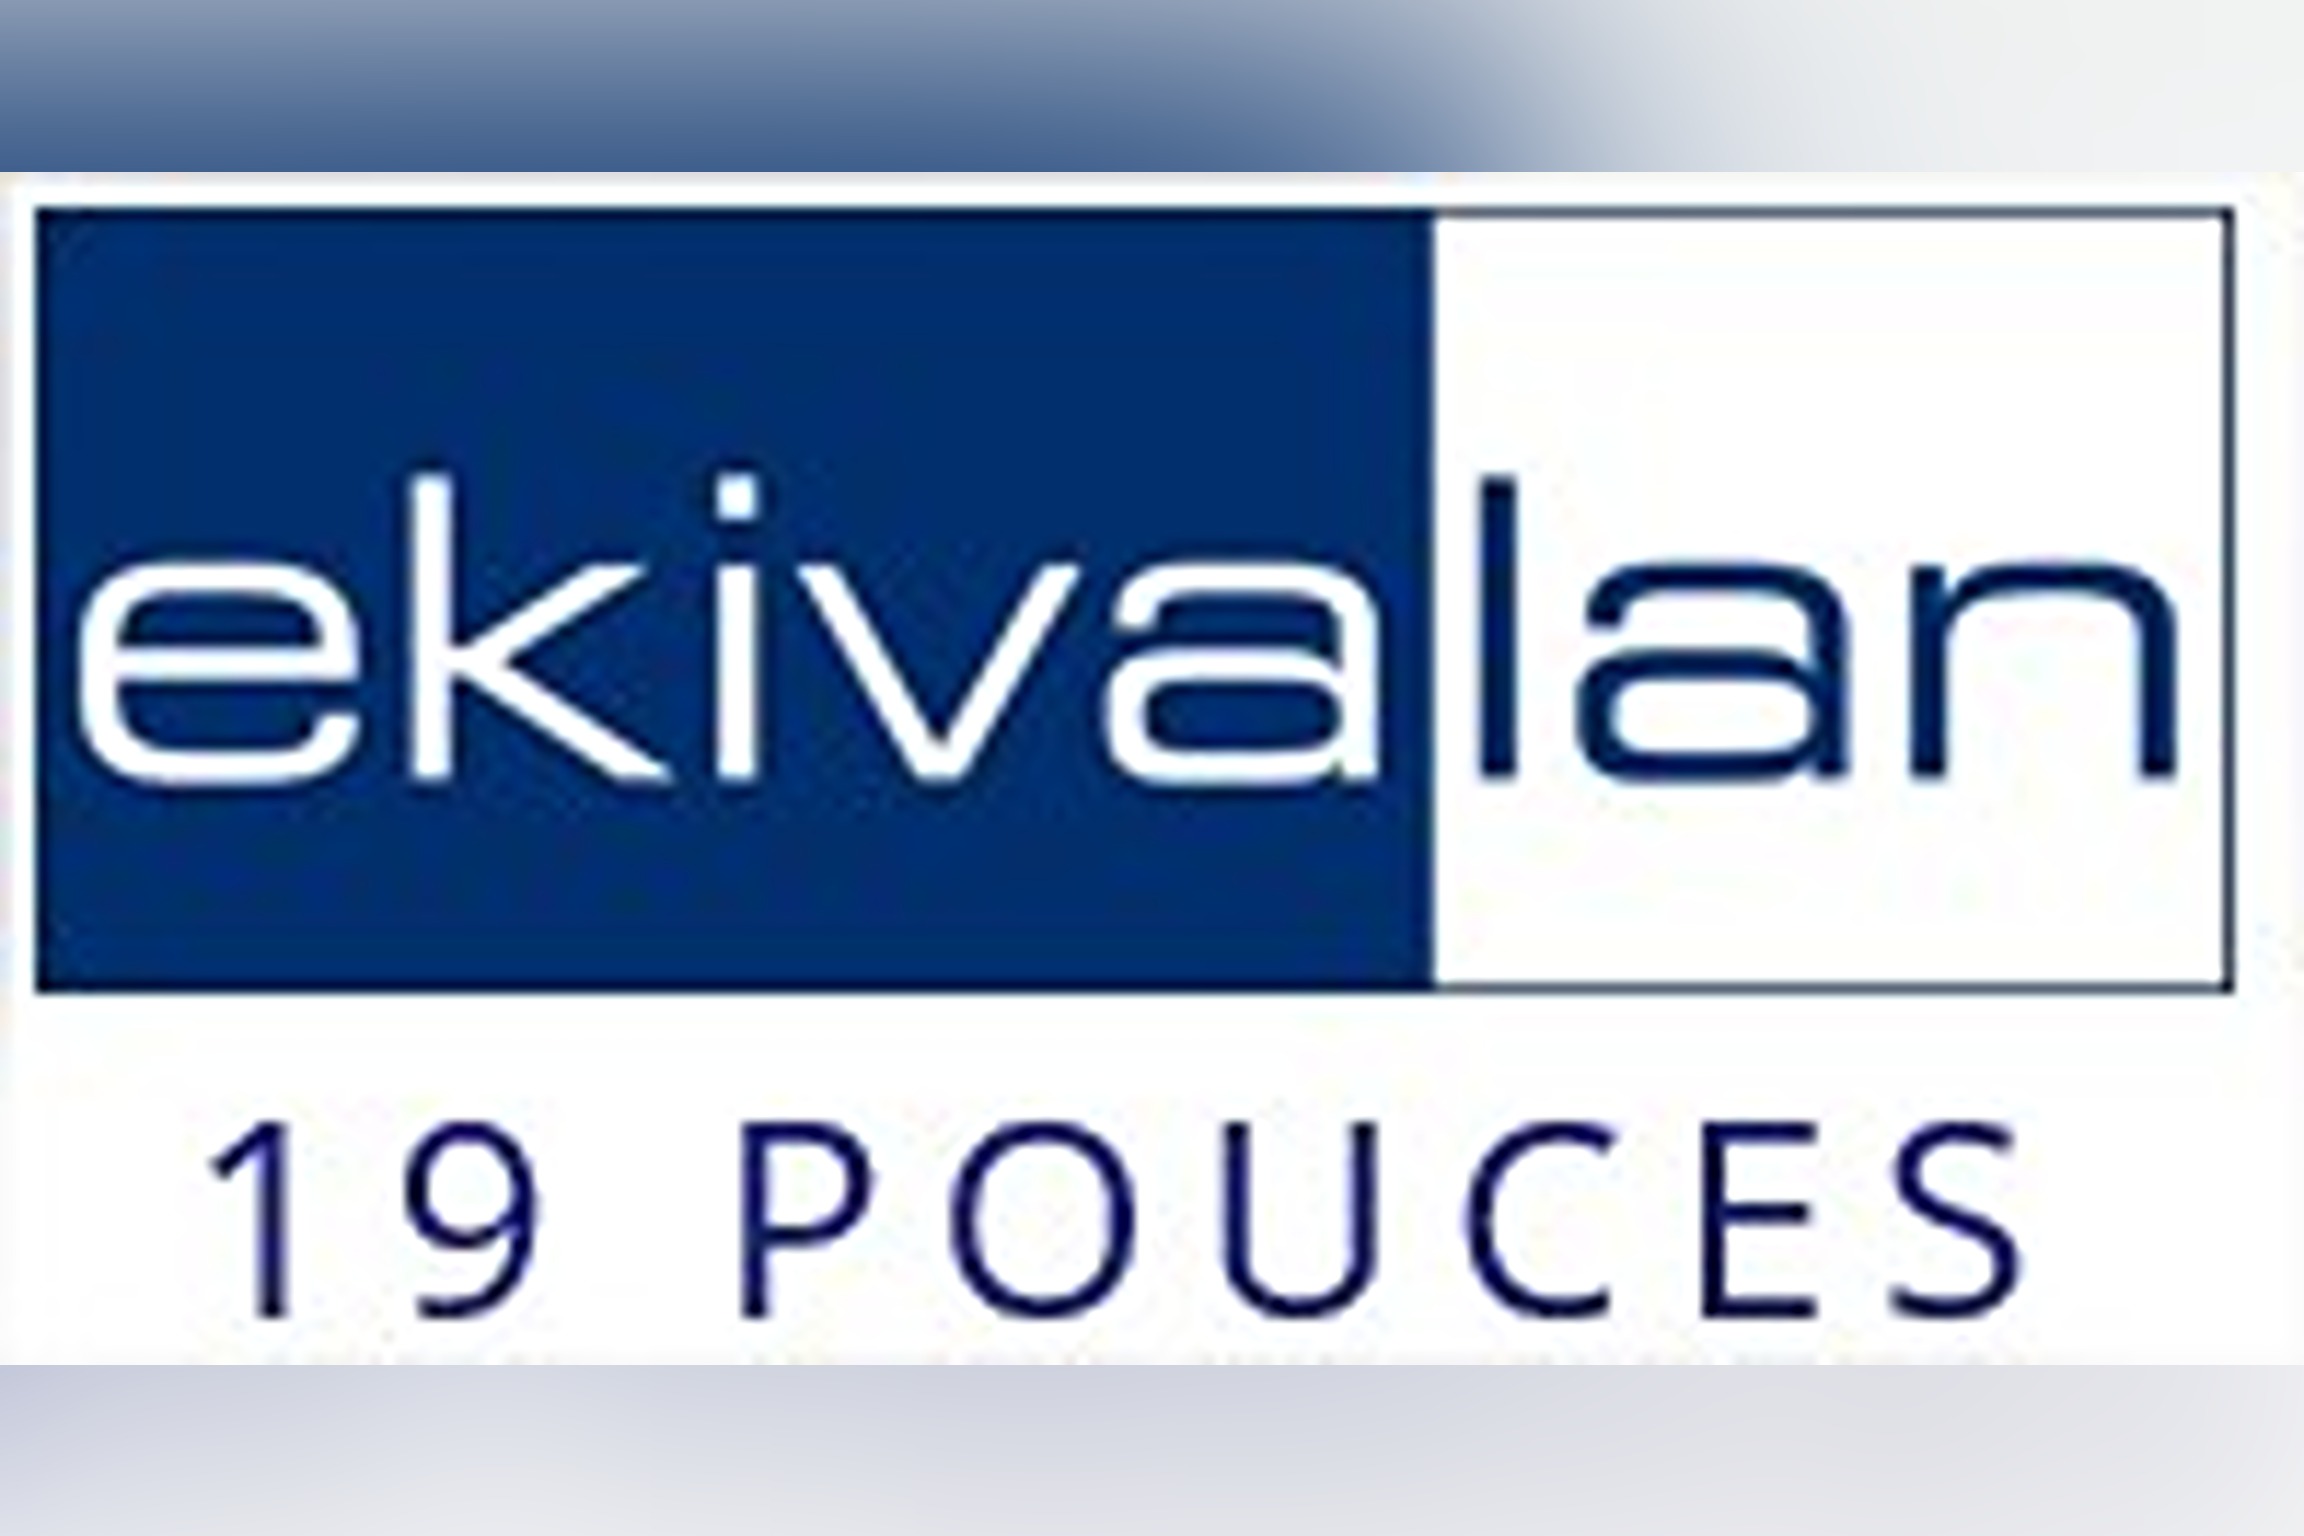 Logo de la marque Ekivalan